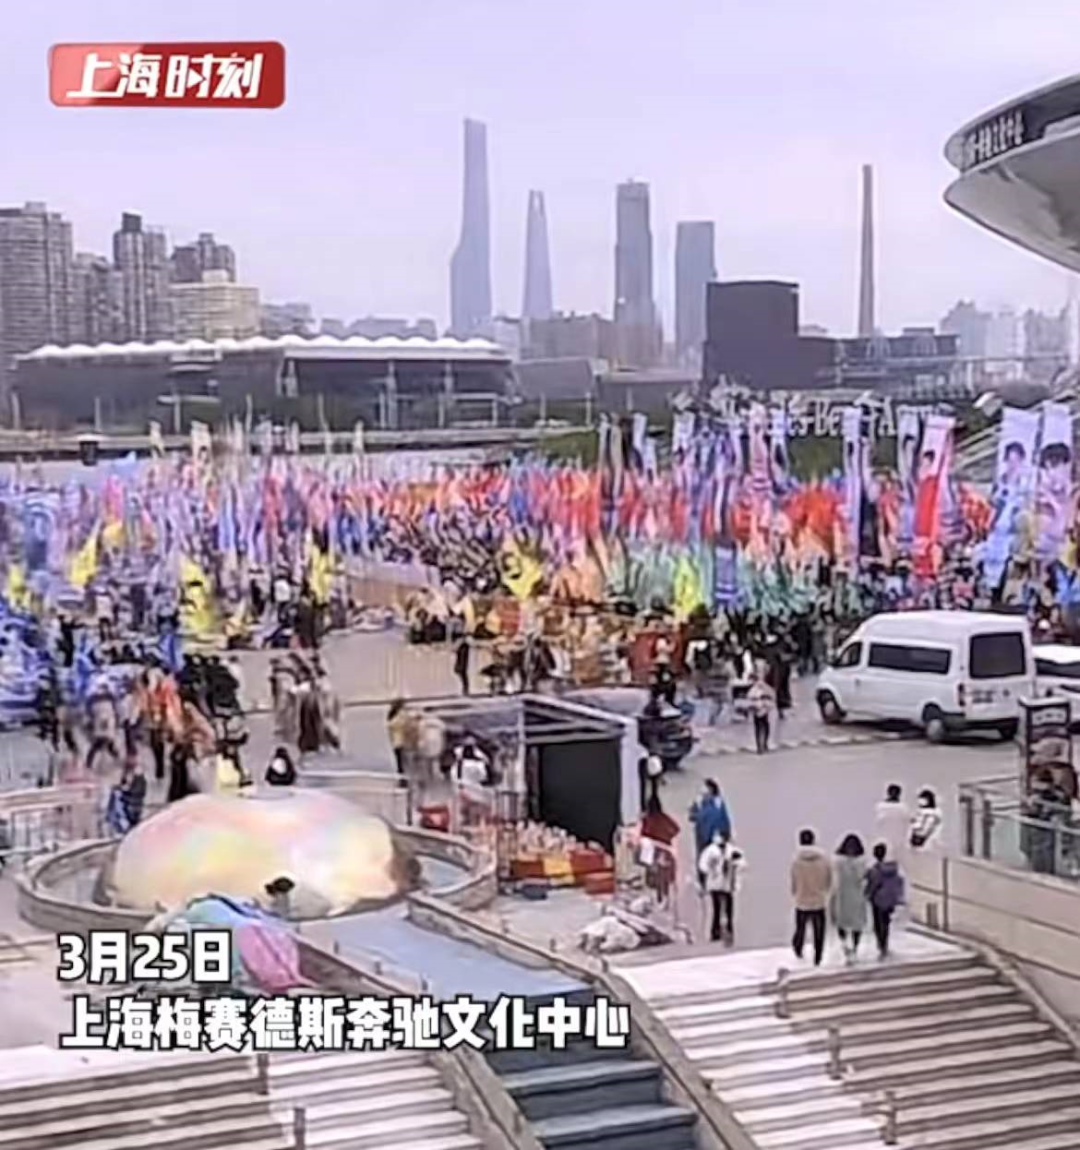 半个娱乐圈今天都来上海了？一些粉丝裹着被子露宿街头守候……警方紧急提醒